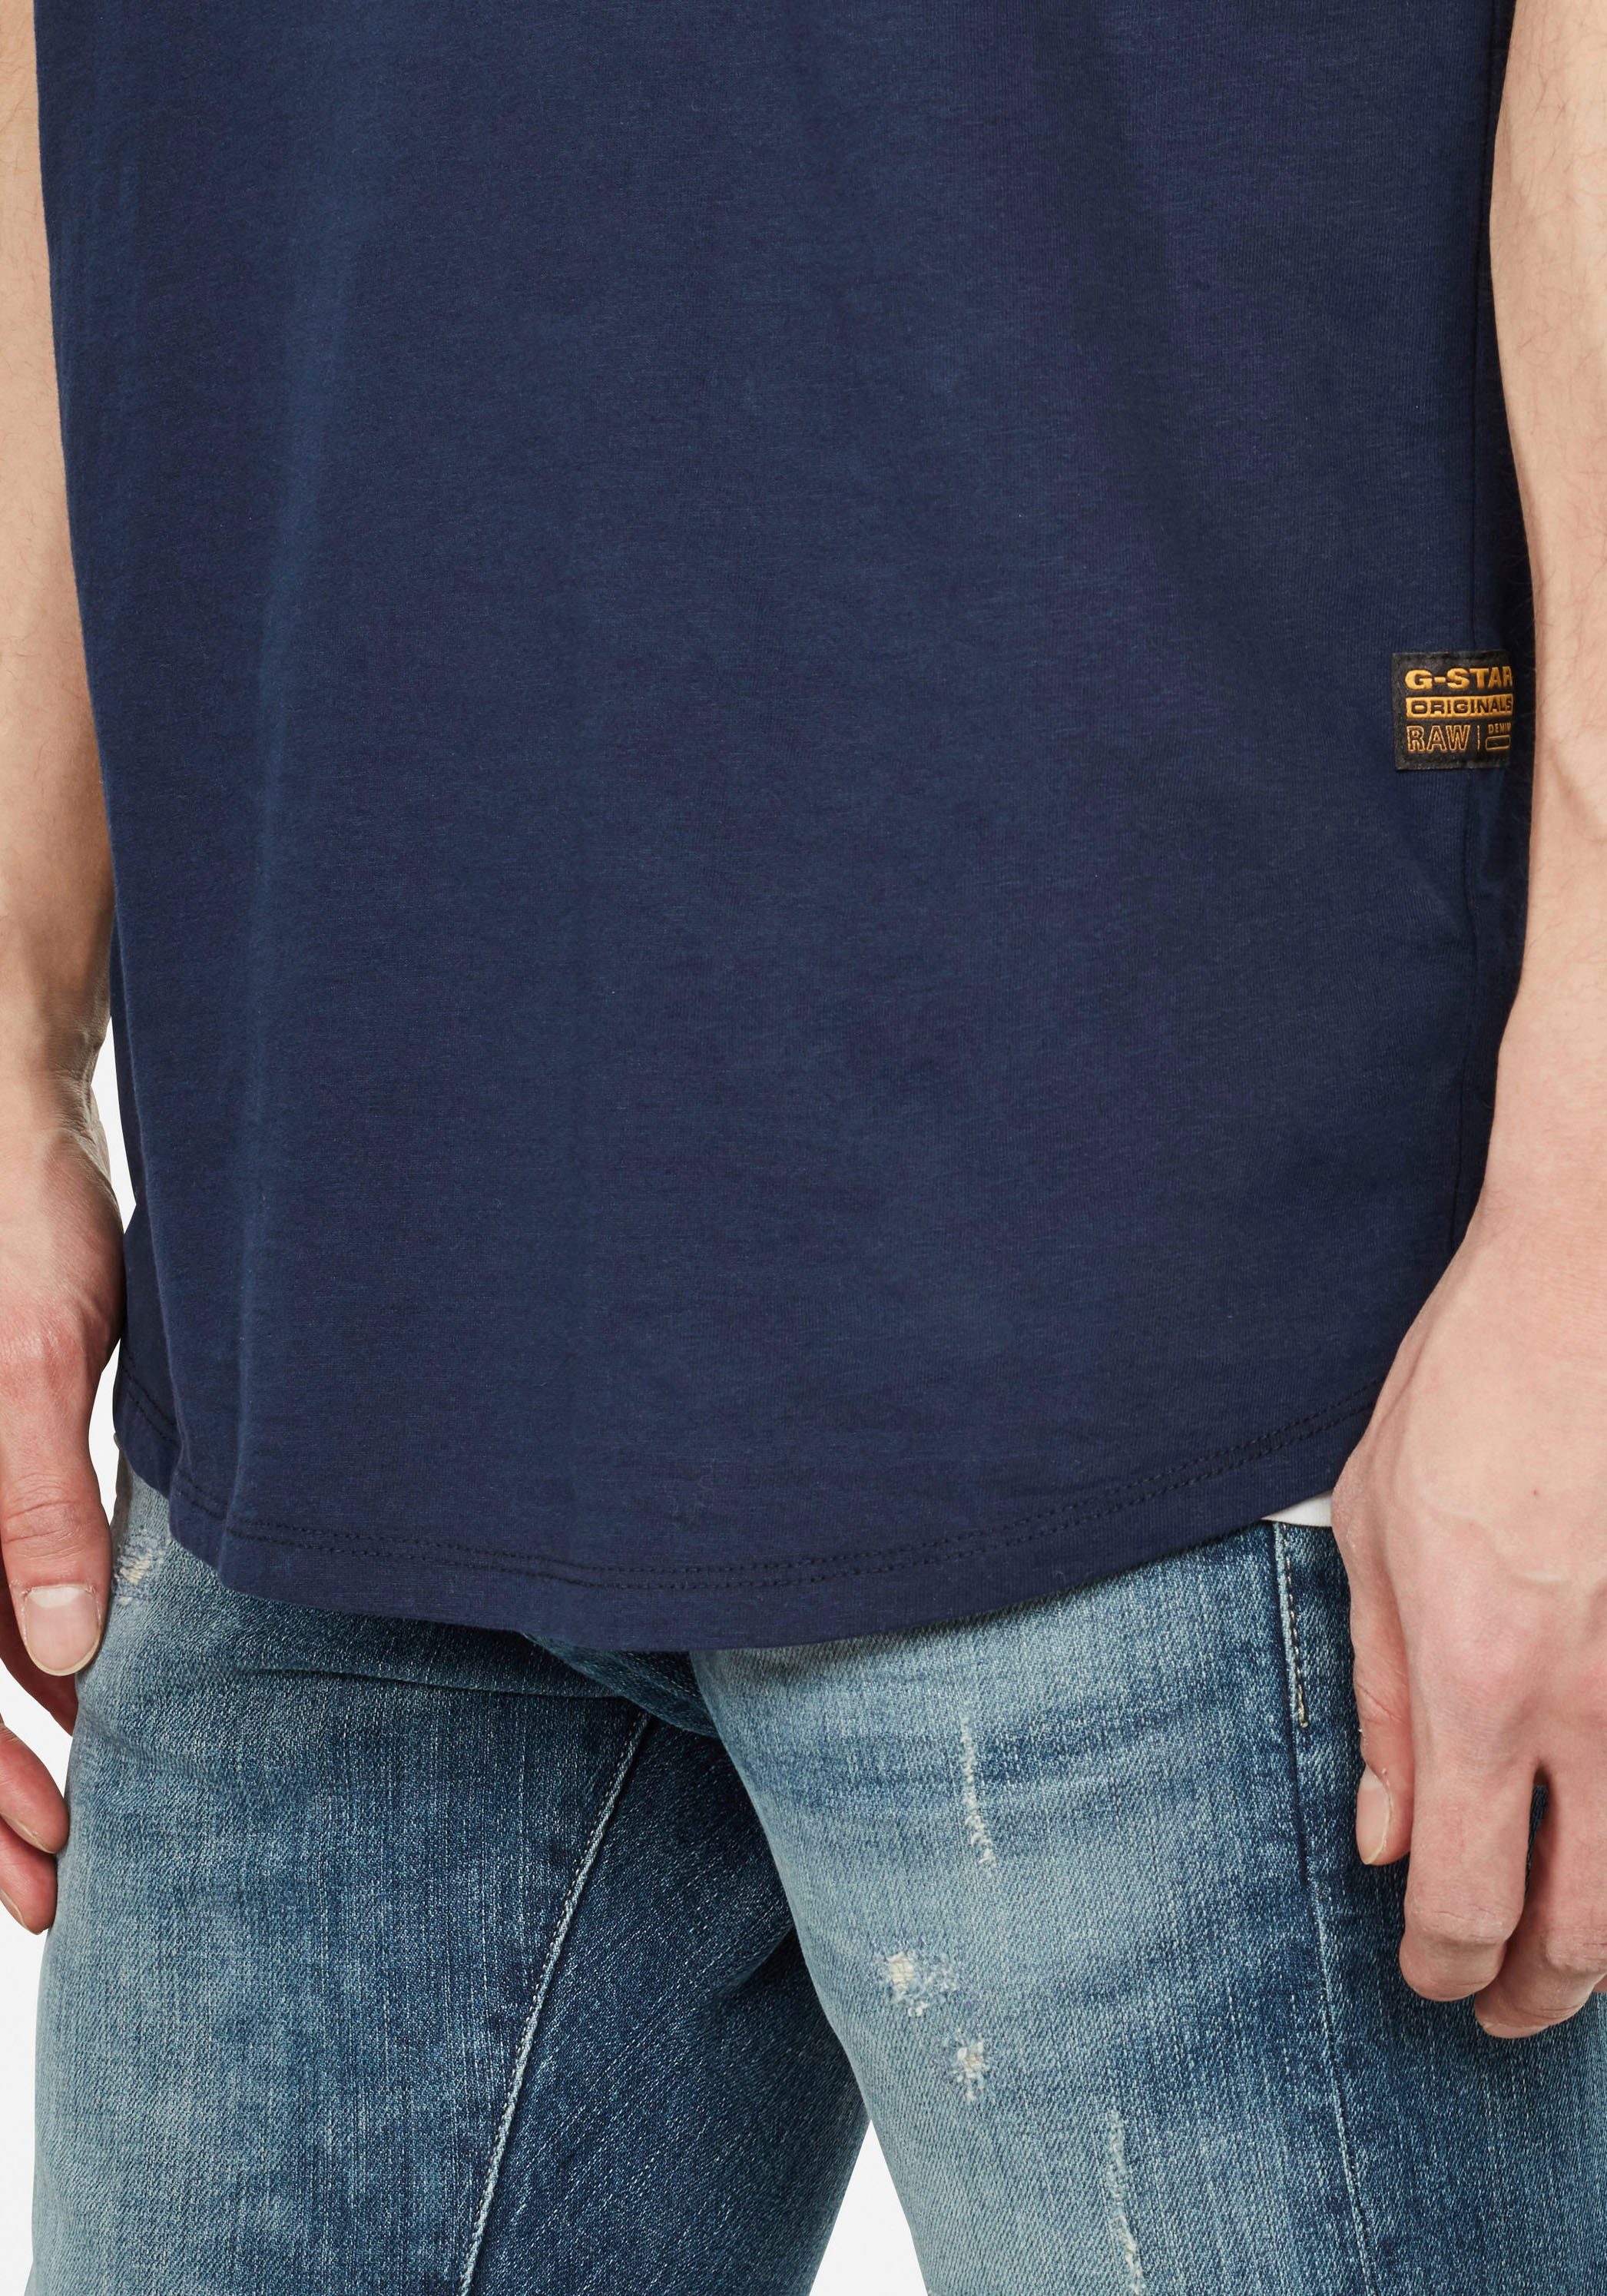 RAW mit Logo kleinem G-Star T-Shirt Stitching Lash navy-meliert